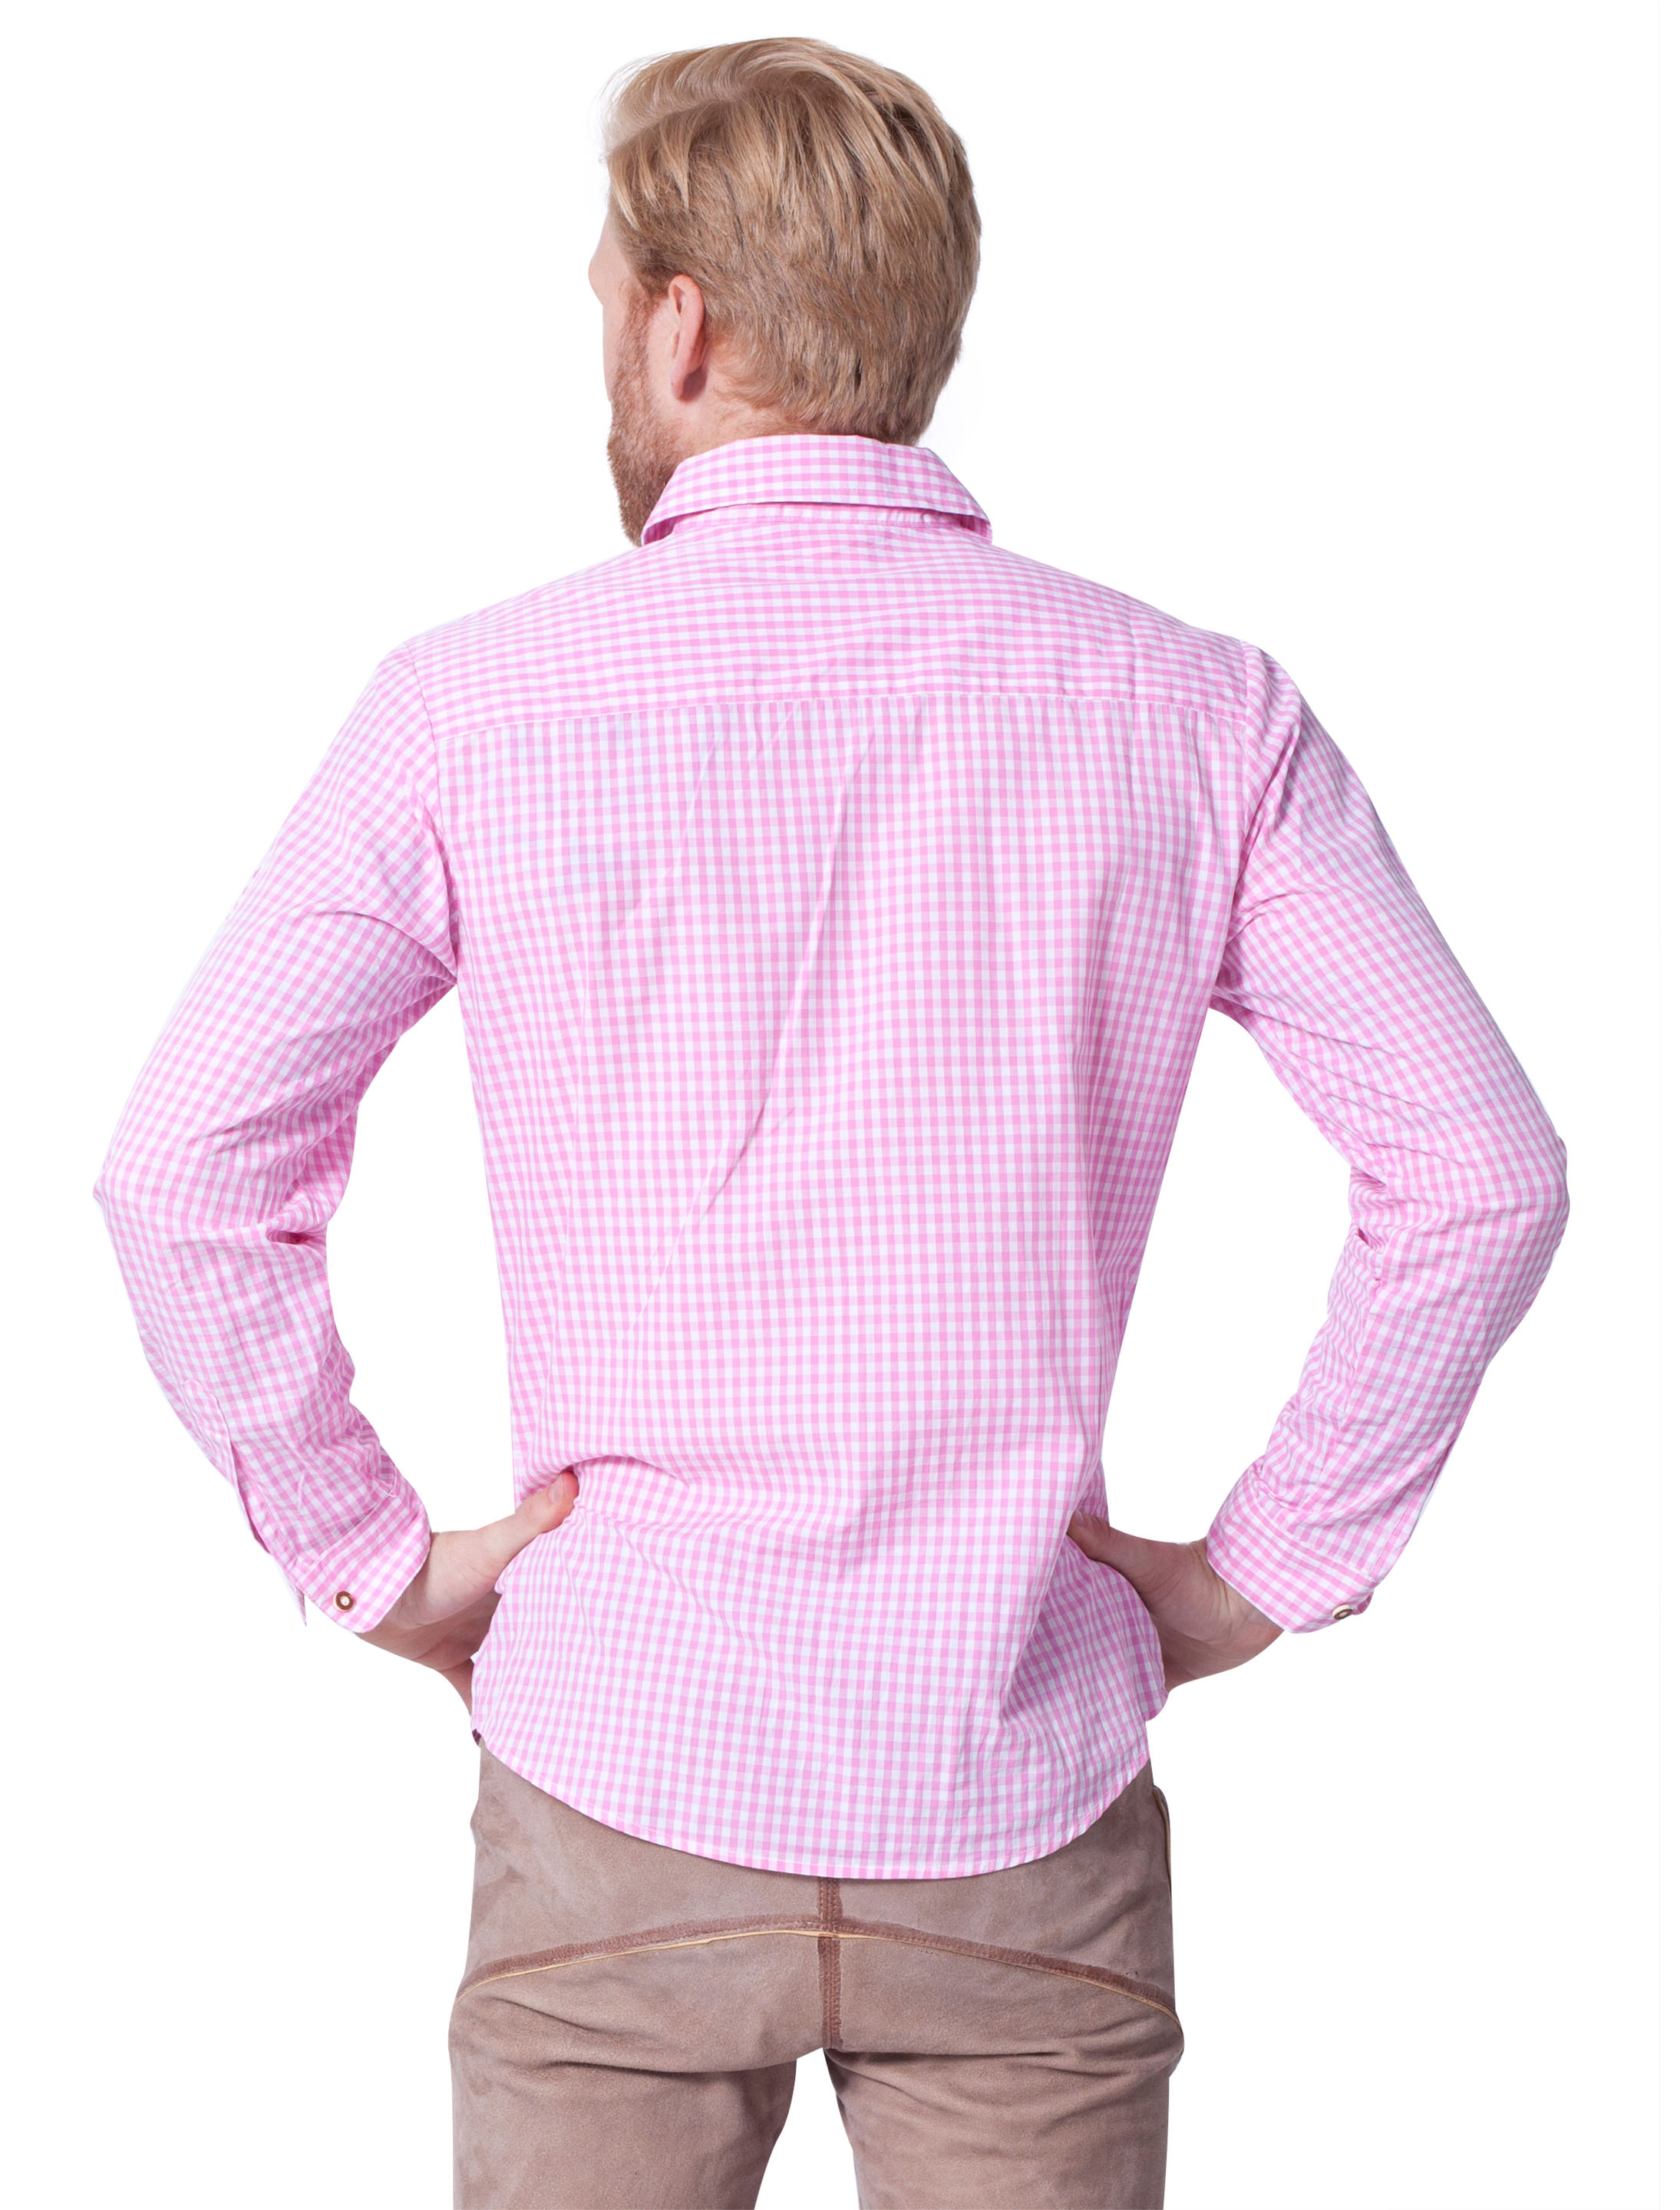 Trachtenhemd Herren pink/weiß XL